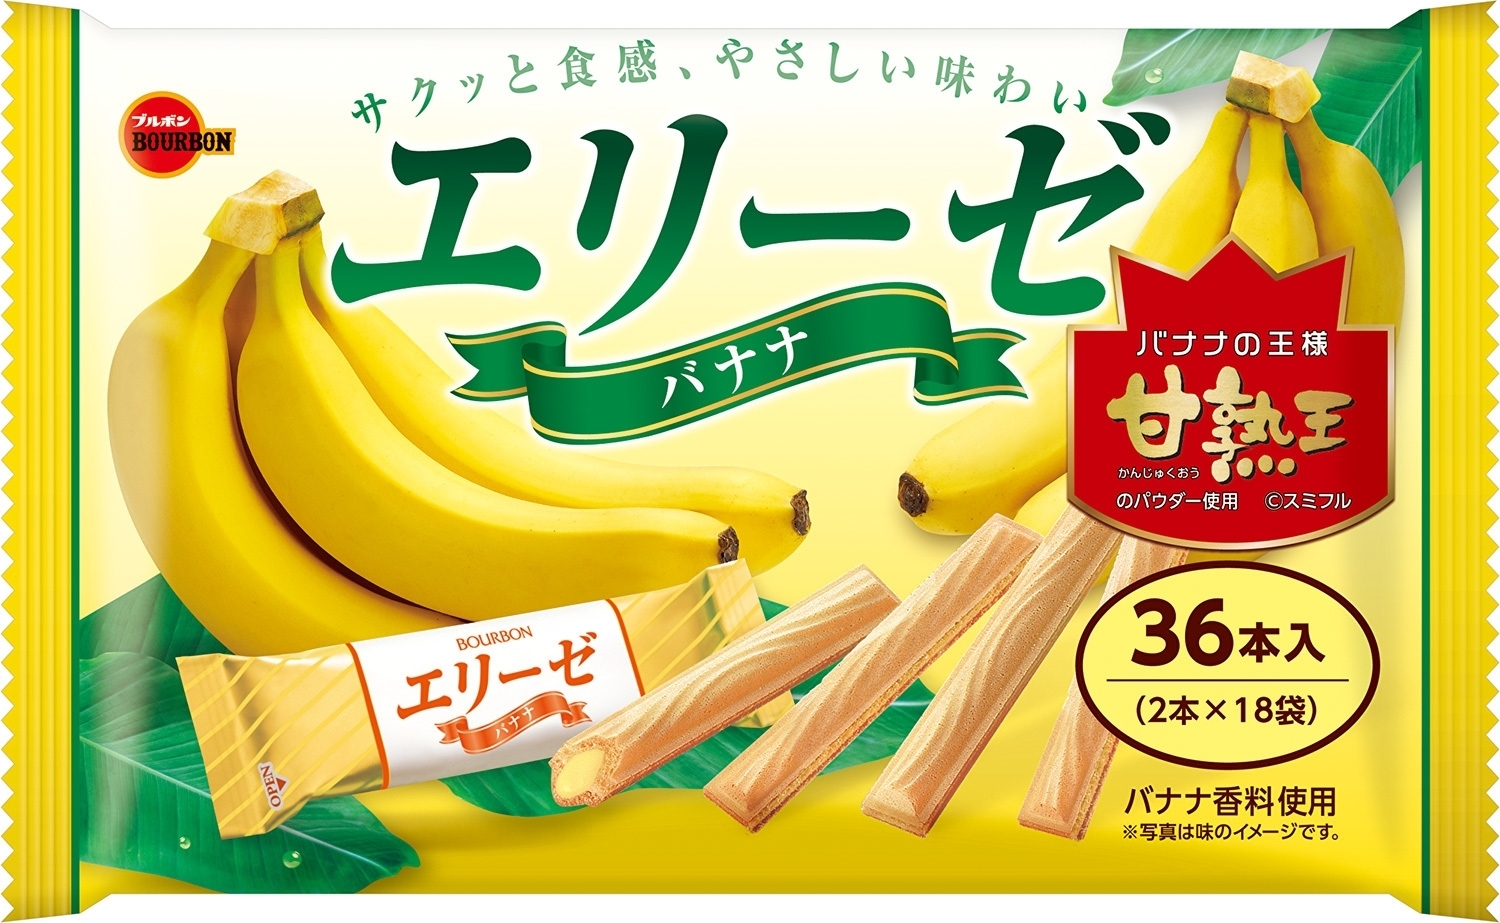 中評価 ブルボン エリーゼ バナナの感想 クチコミ 商品情報 もぐナビ